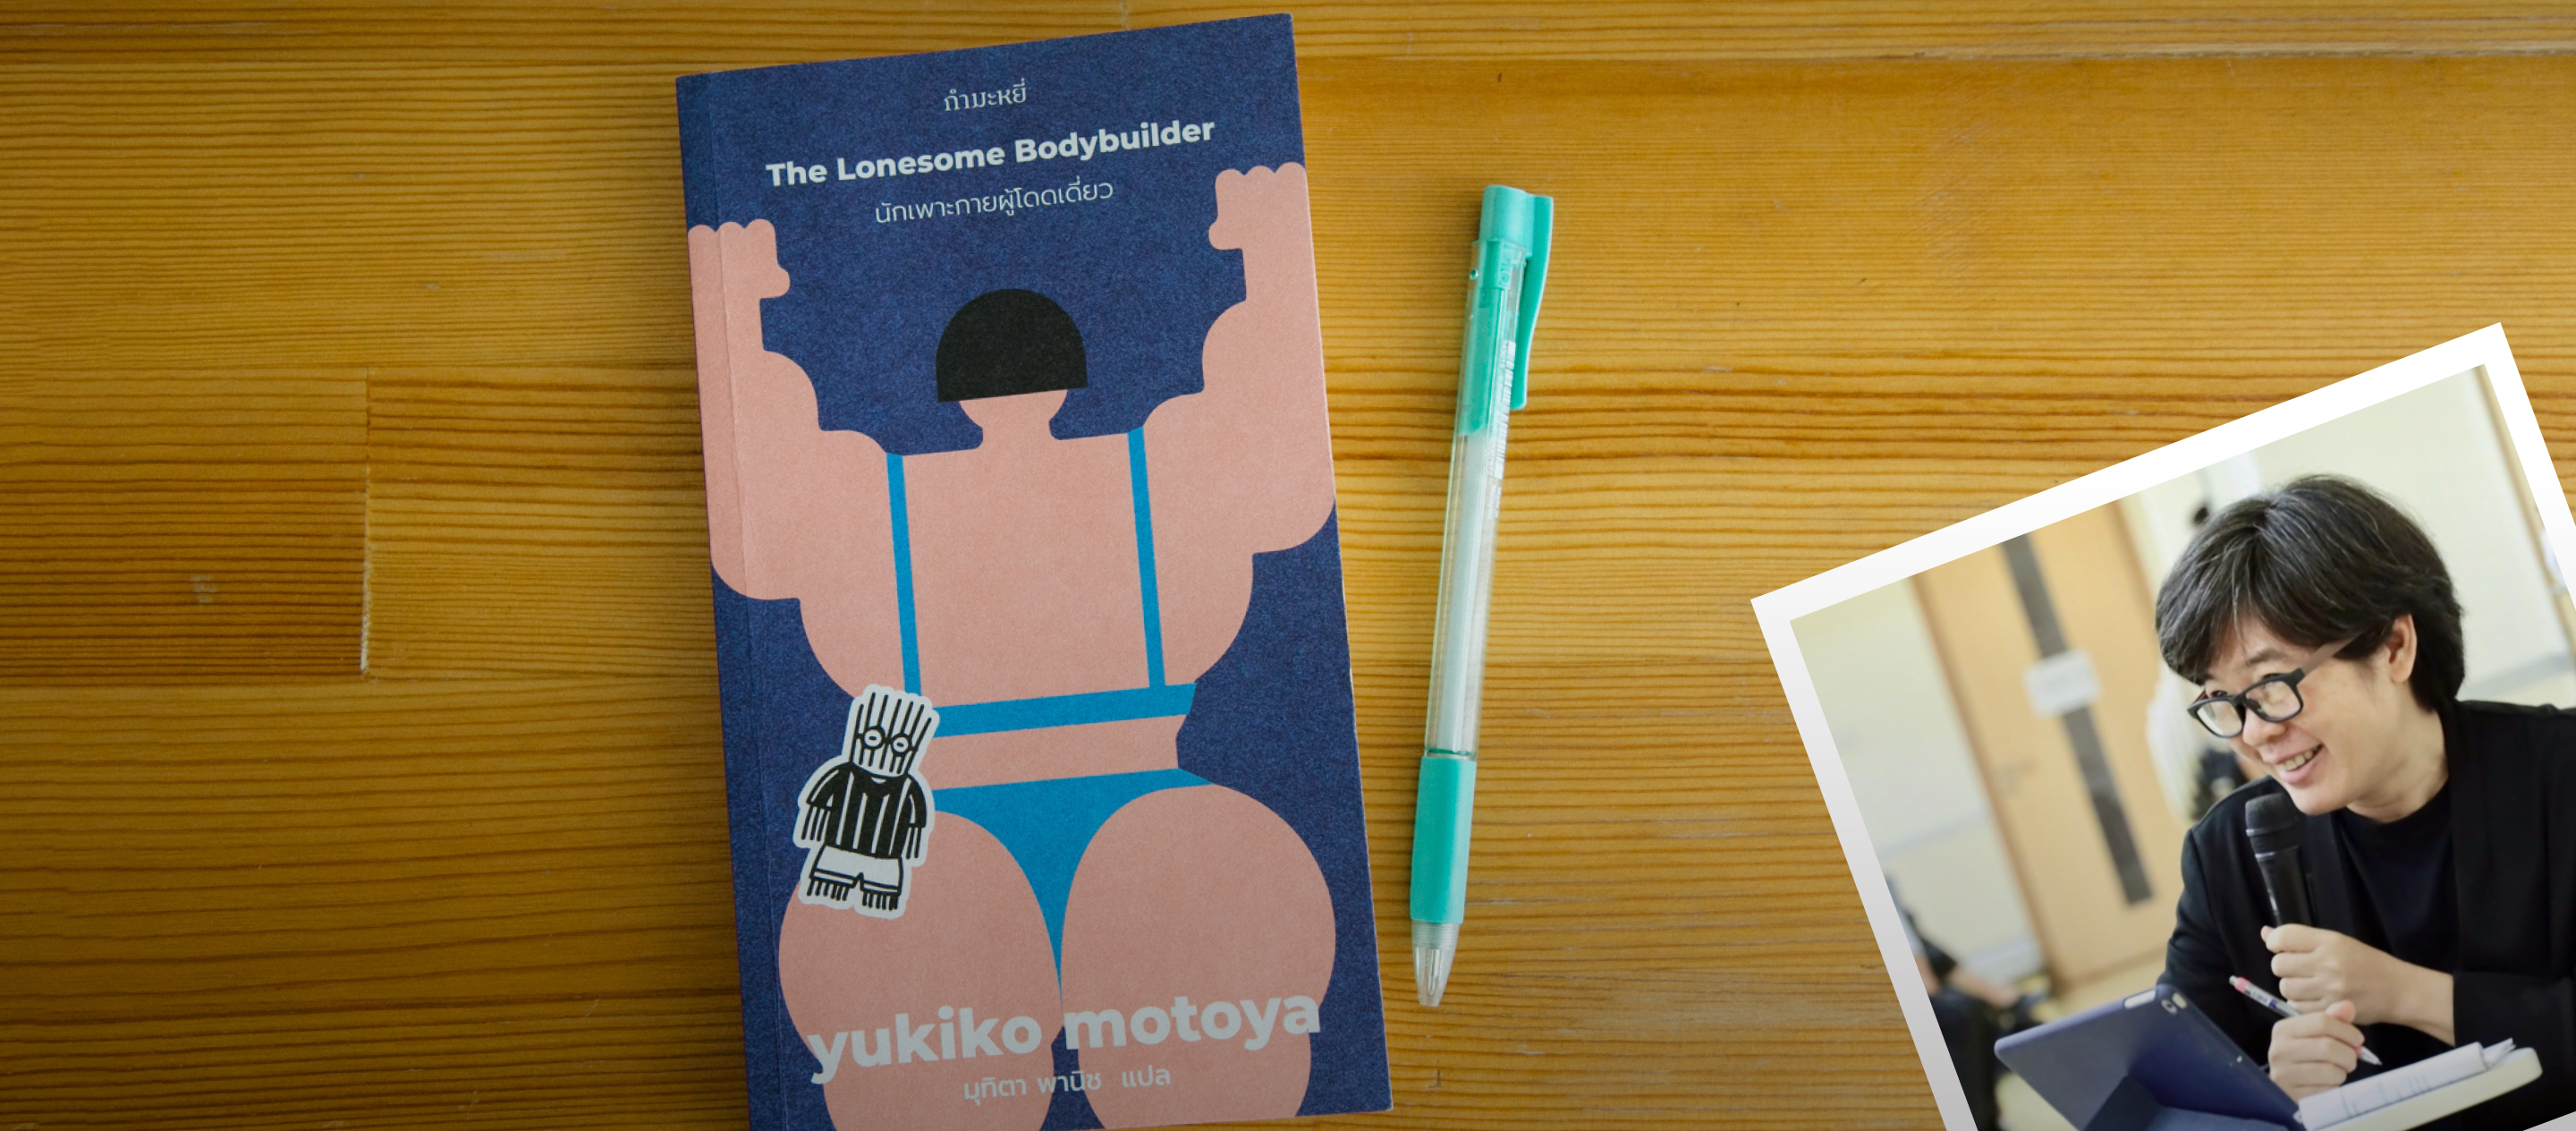 คุยกับปากกาของ มุทิตา พานิช ผู้แปลหนังสือของมูราคามิและวรรณกรรมญี่ปุ่นชั้นดีหลายเล่ม